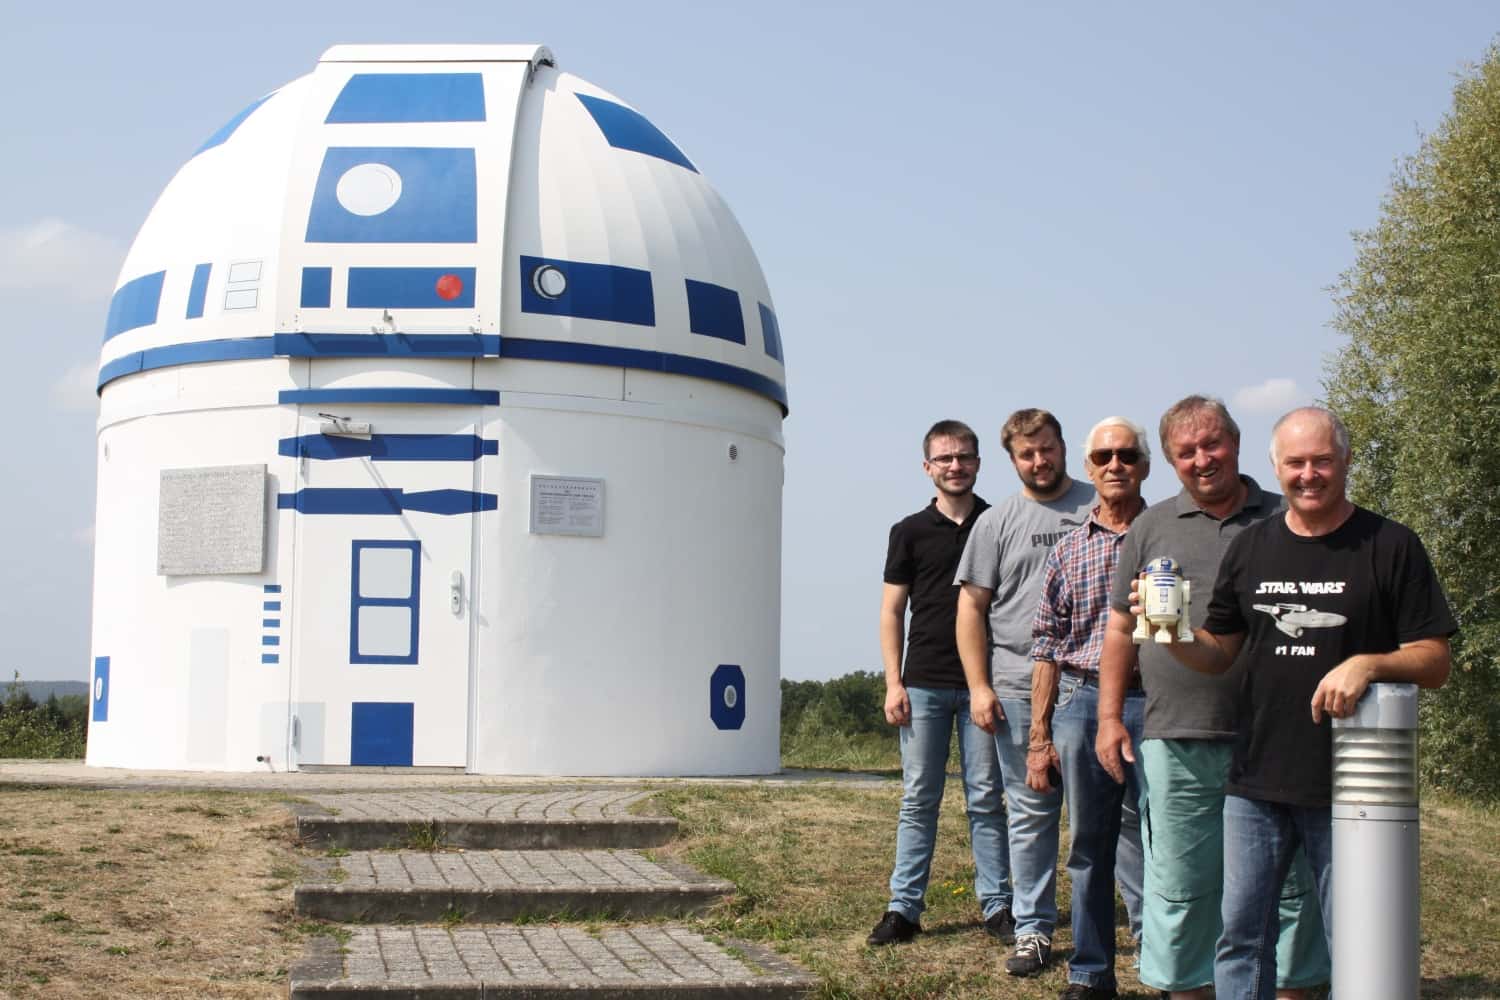 Cientificos en la puerta del observatorio de Zweibrücken como si fuera el androide r2d2